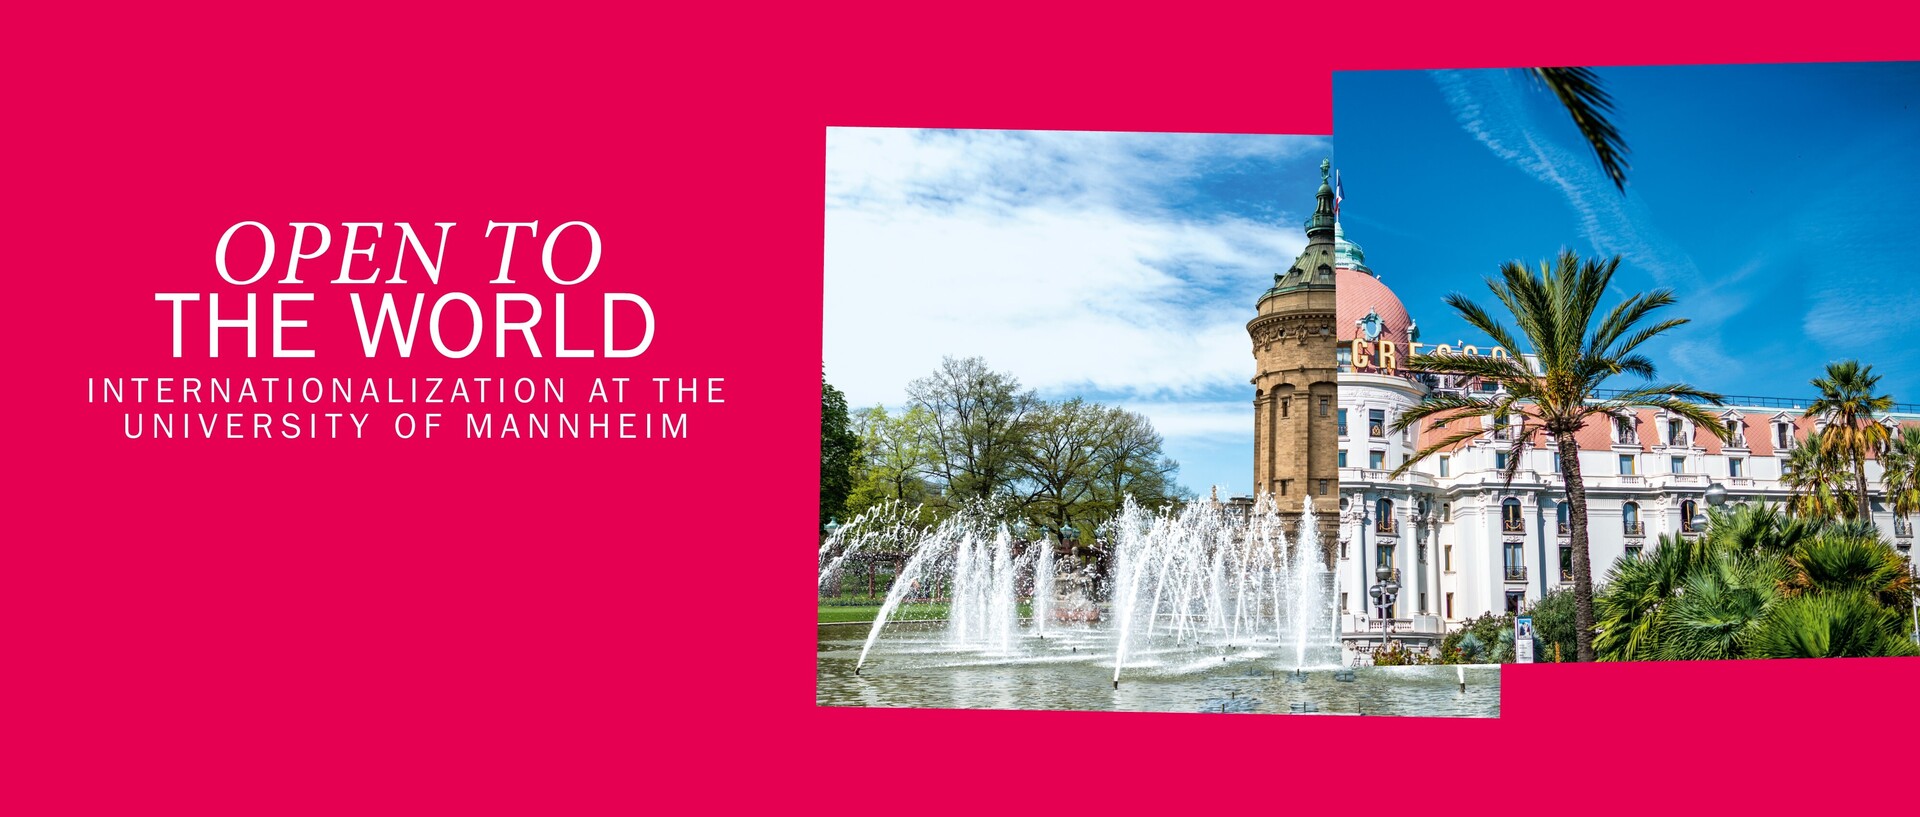 Header in pink mit der weißen Schrift "Open to the world, internationalization at the university of Mannheim". Rechts sind zwei Bilder, eines vom Mannheimer Wasserturm und eines von einem Gebäude in Nizza zu einer Collage geformt.